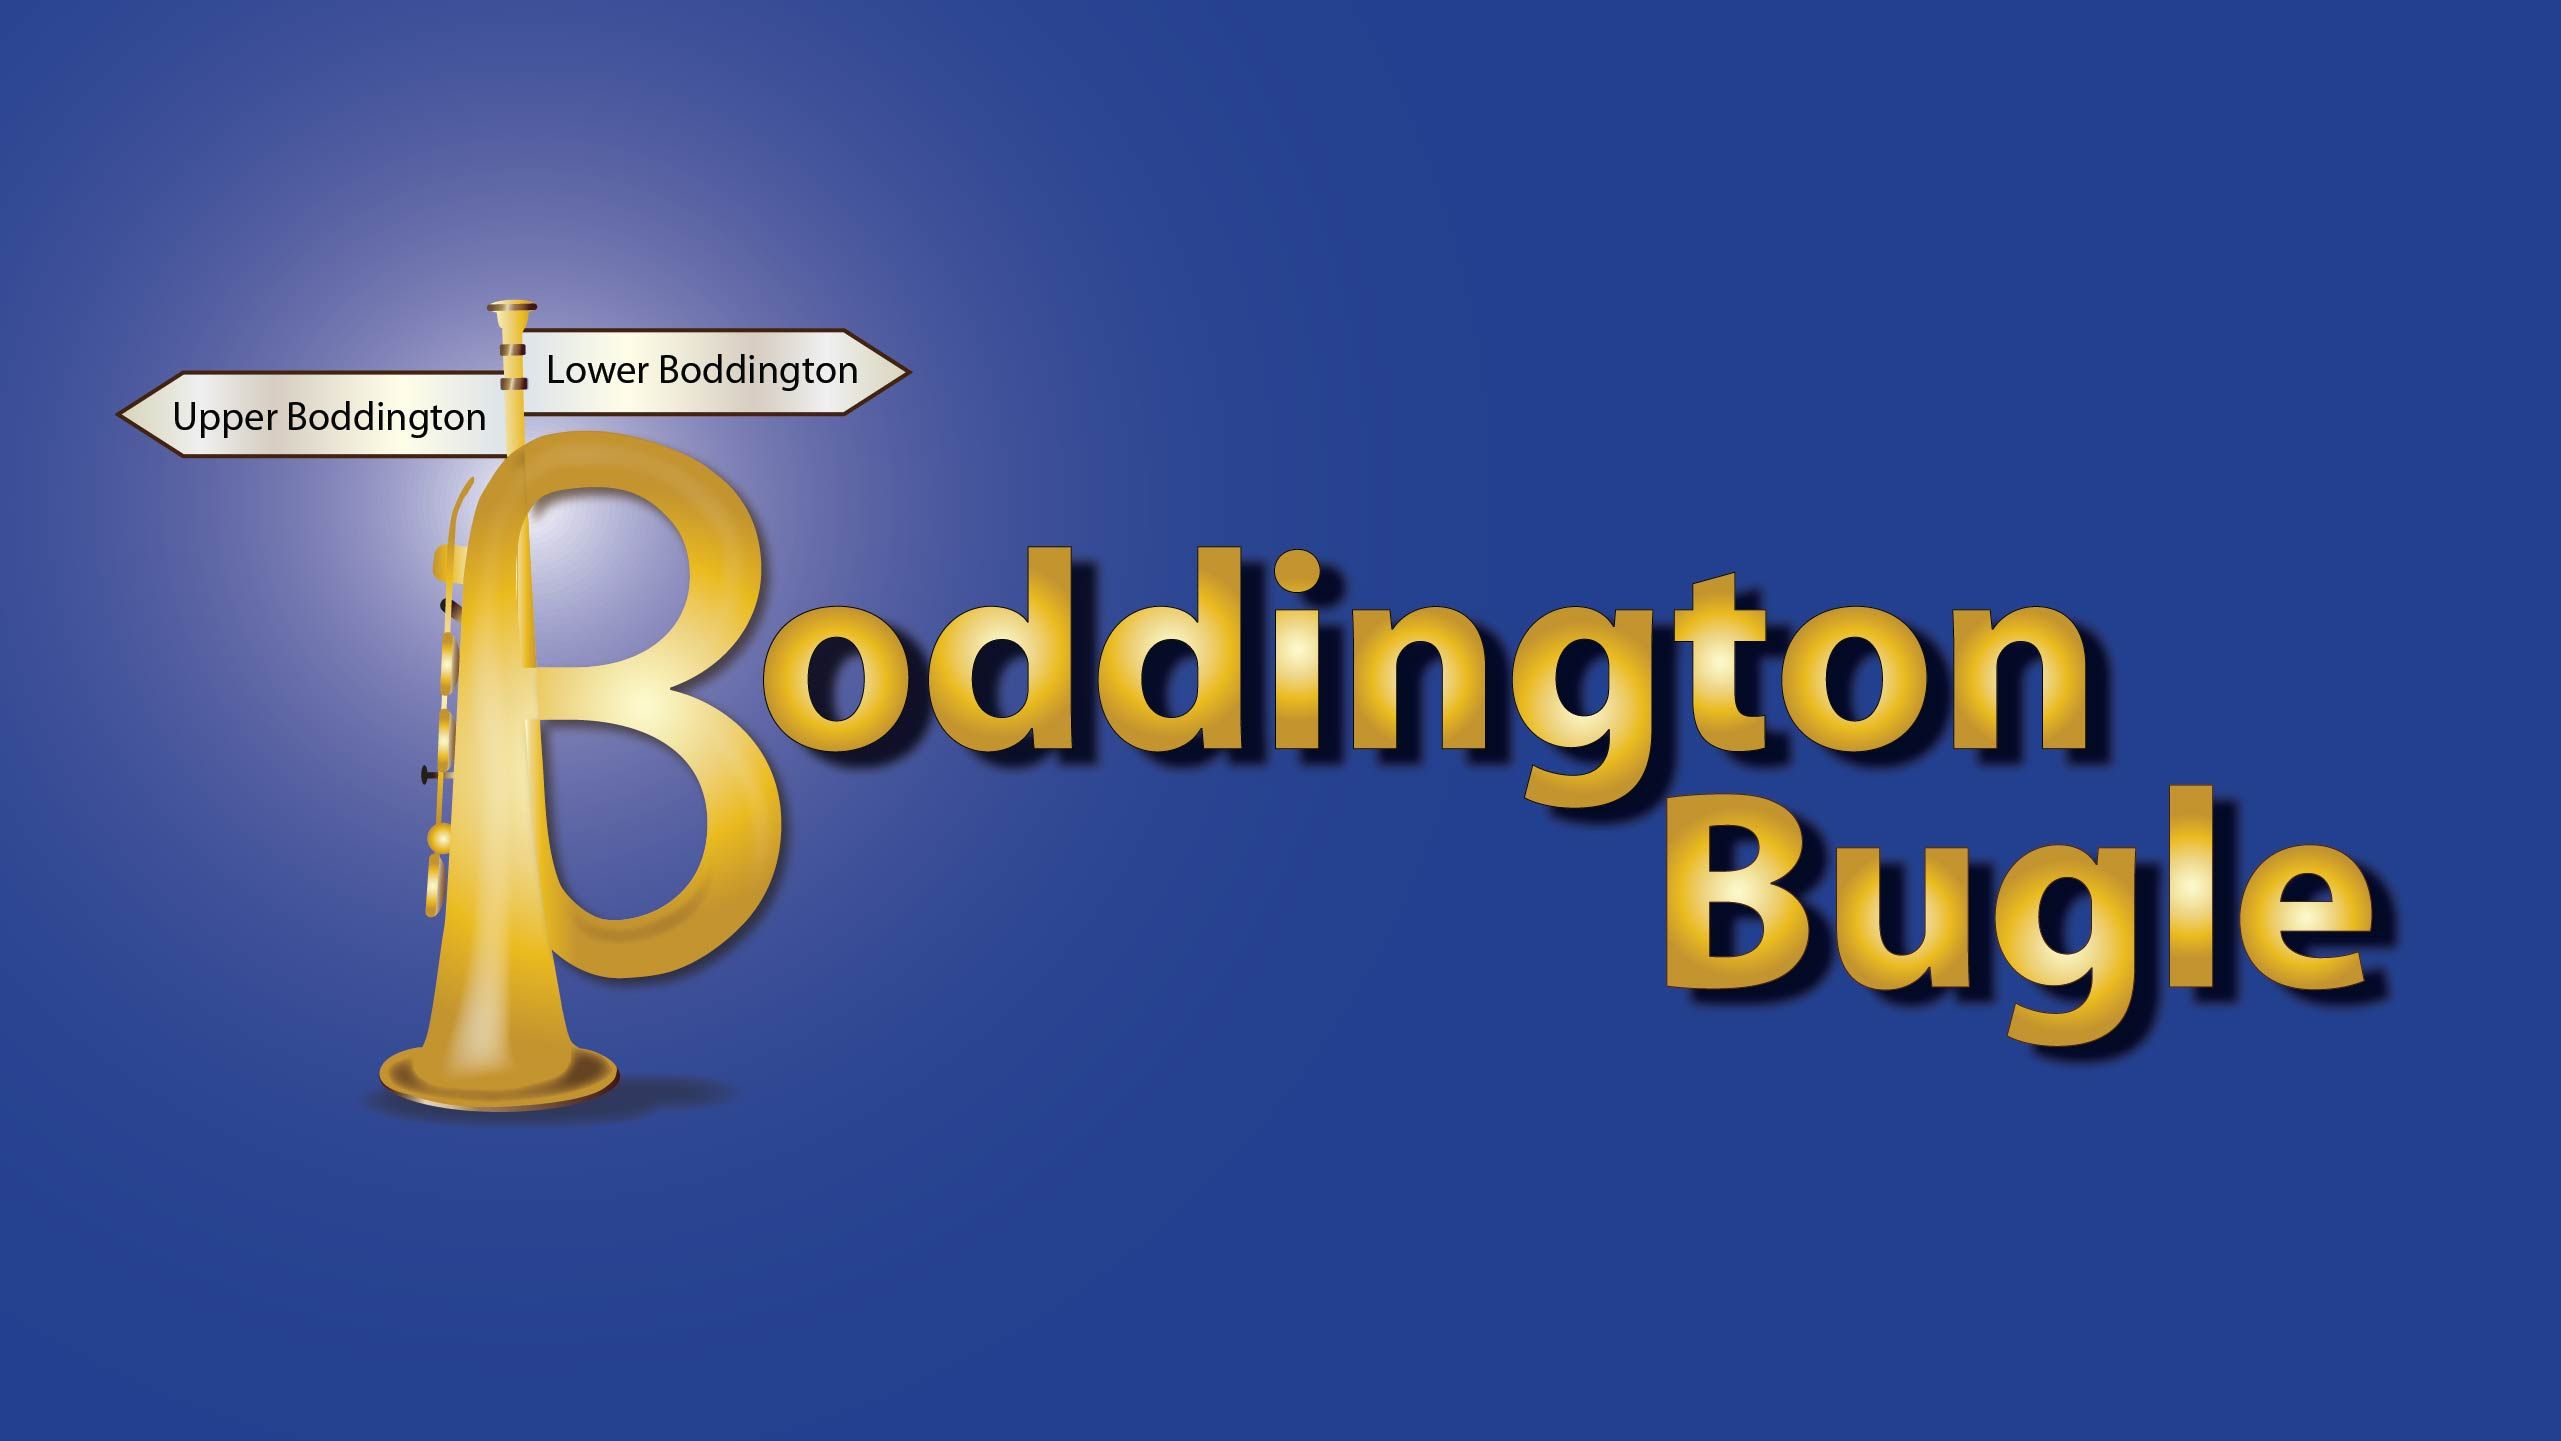 Boddington Bugle Website